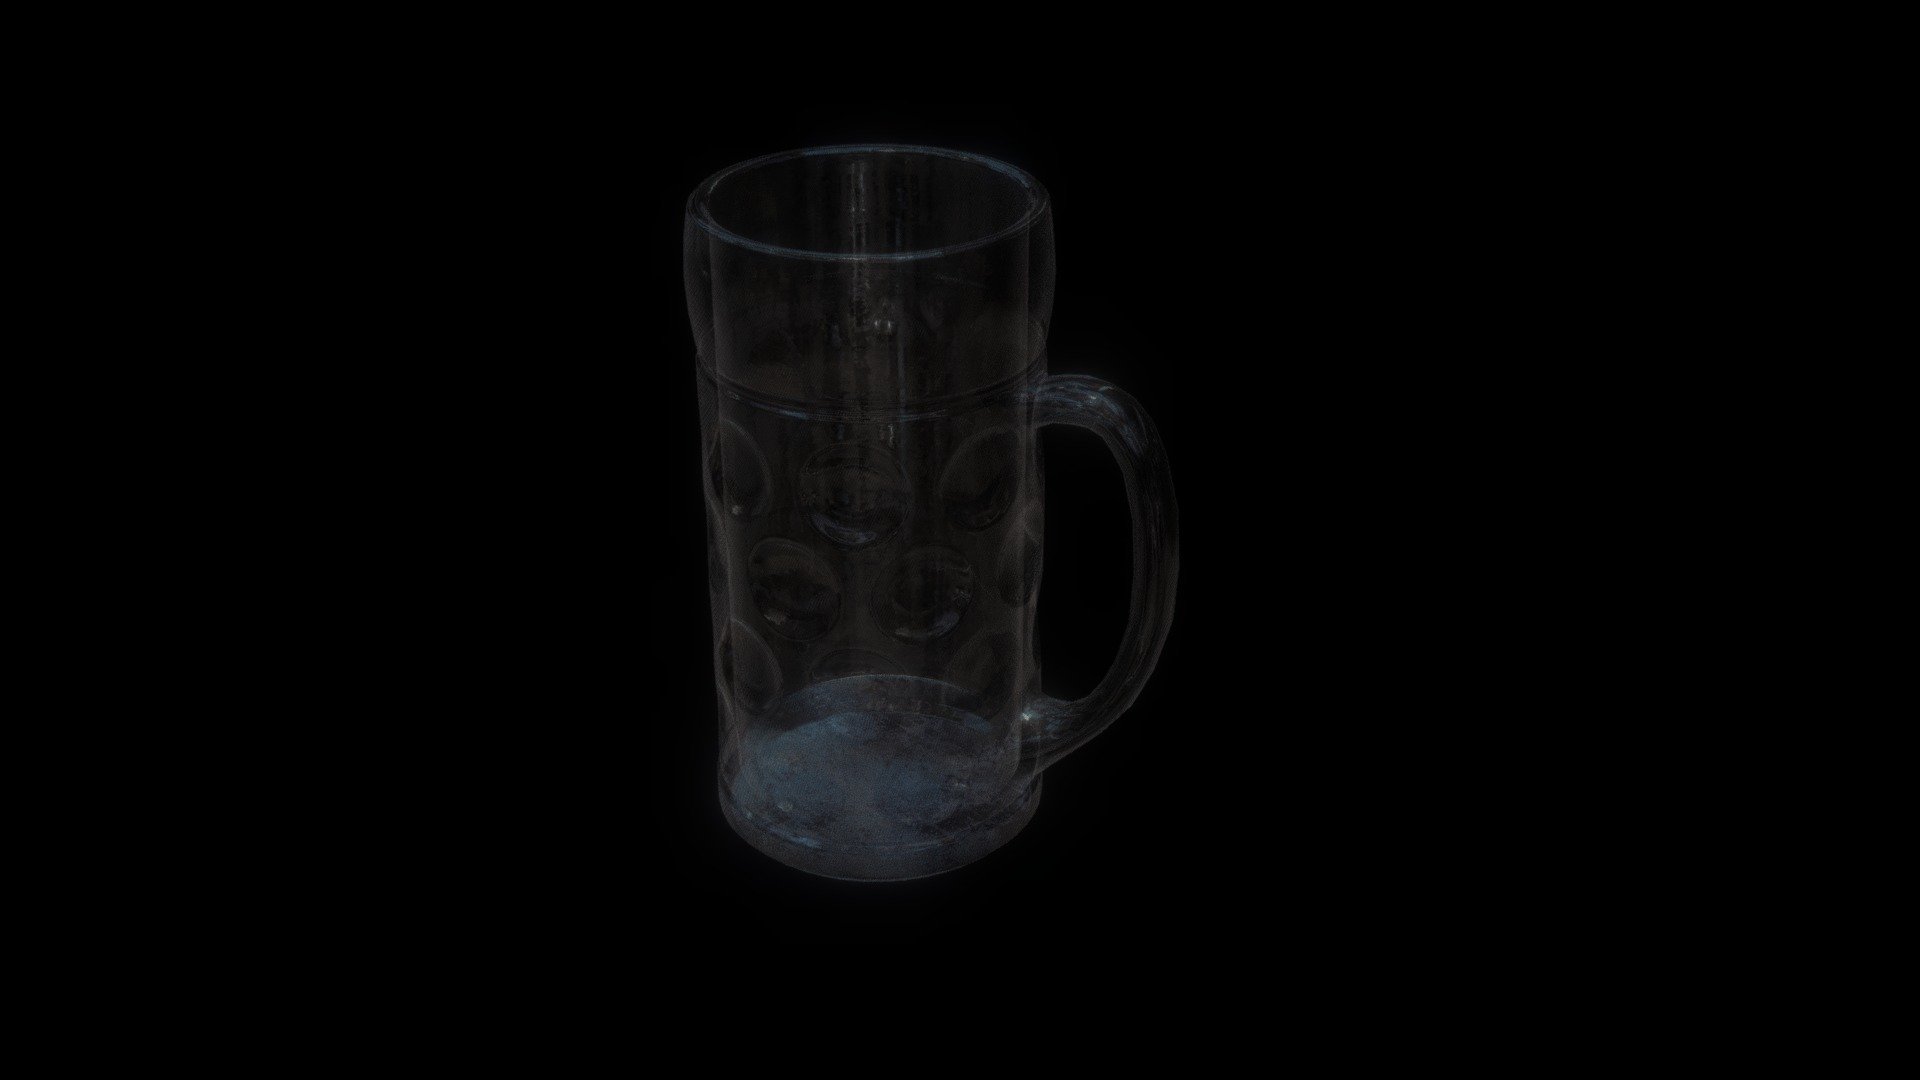 Beer Mug Glass
2K Texture - Beer Mug Glass - Download Free 3D model by Bob (@MeBob) 3d model